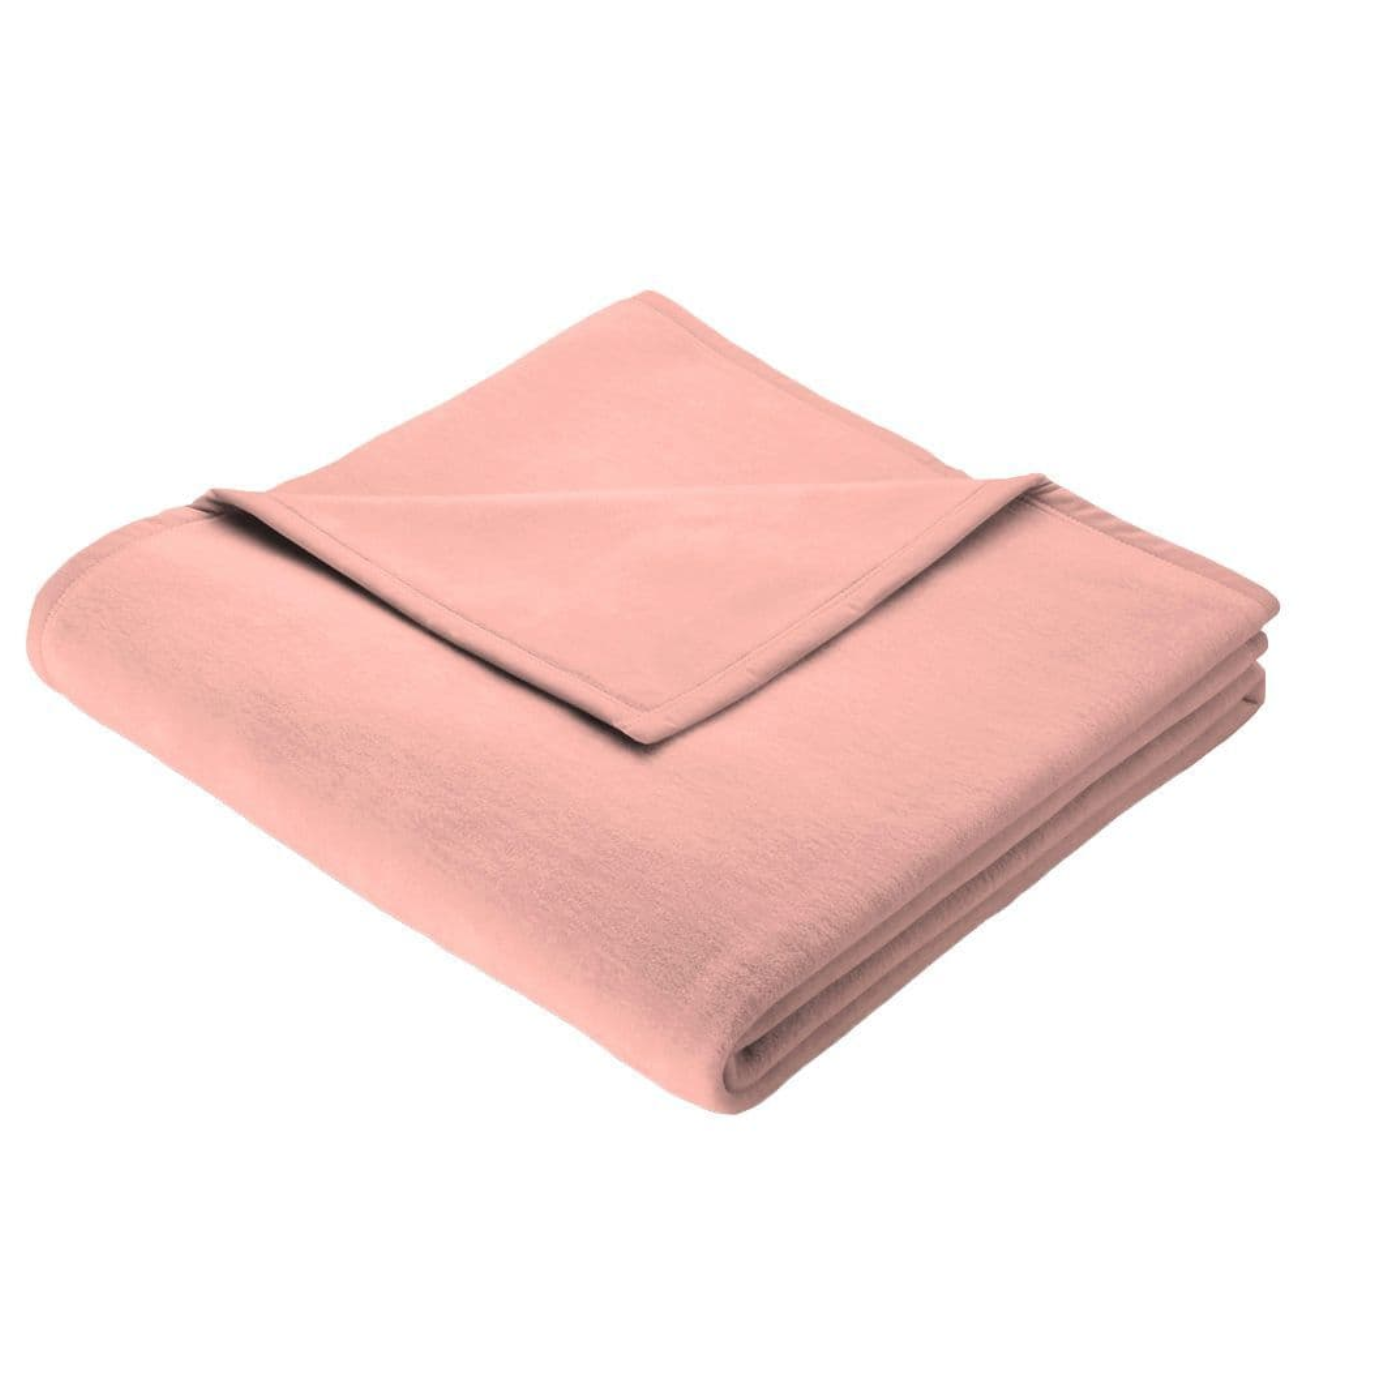 Folded blanket 